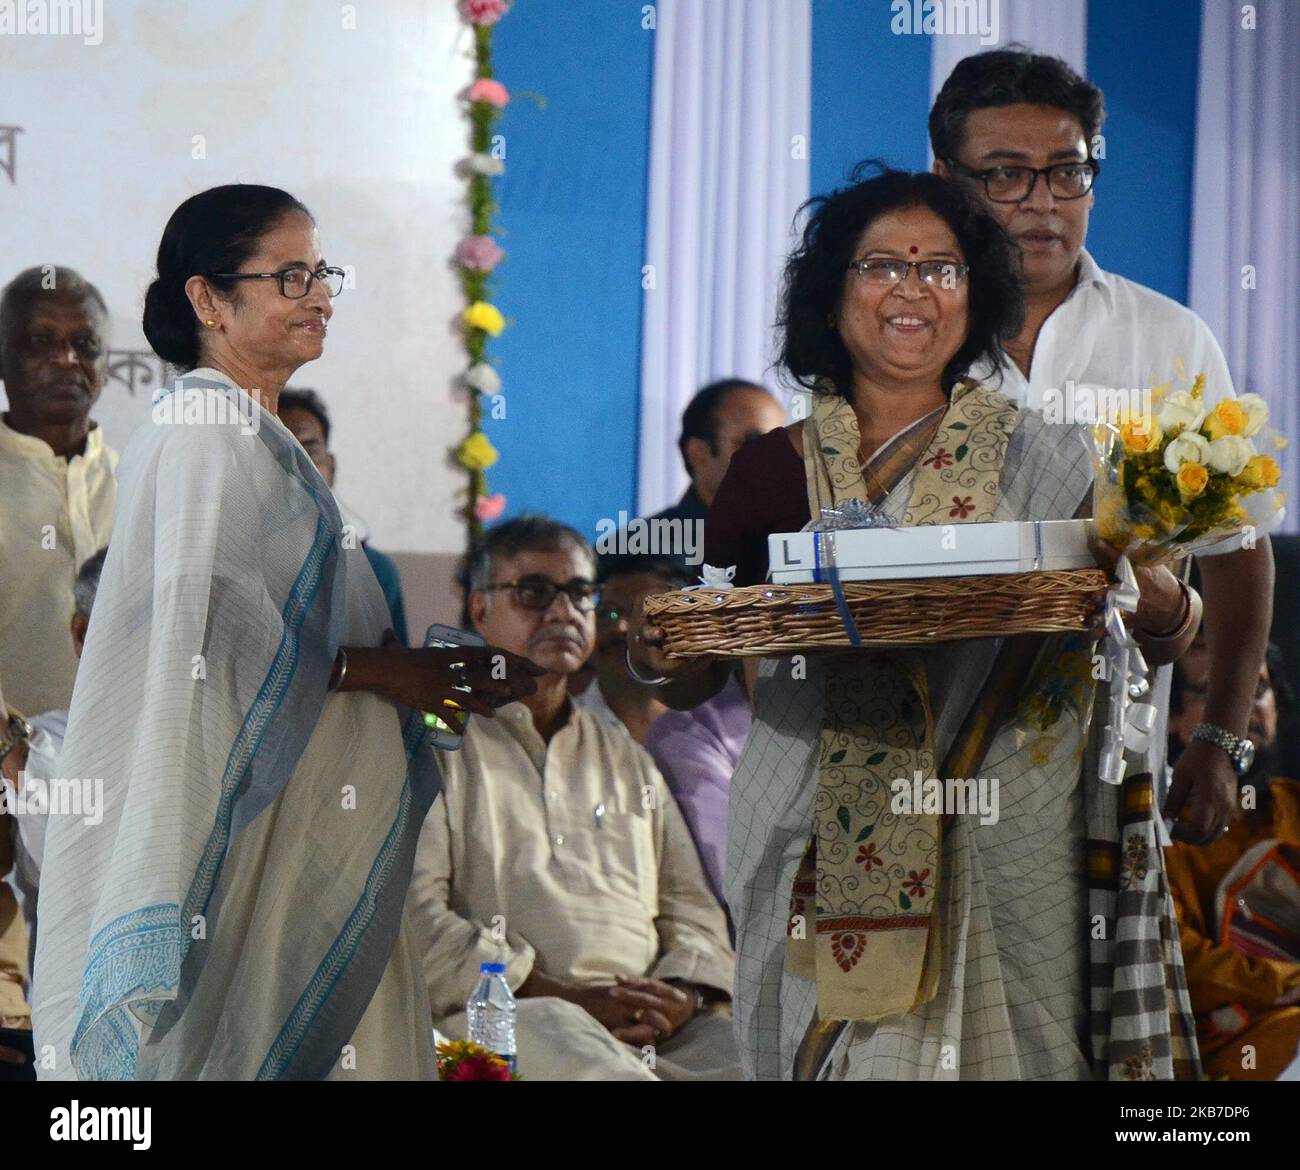 La Ministra Principal de Bengala Occidental, Mamata Banerjee, felicita al activista social de Gandhi Aashram con ocasión del 150th aniversario del nacimiento de Mahatma Gandhi en Kolkata, India, el miércoles 2nd de octubre de 2019. (Foto de Sonali Pal Chaudhury/NurPhoto) Foto de stock